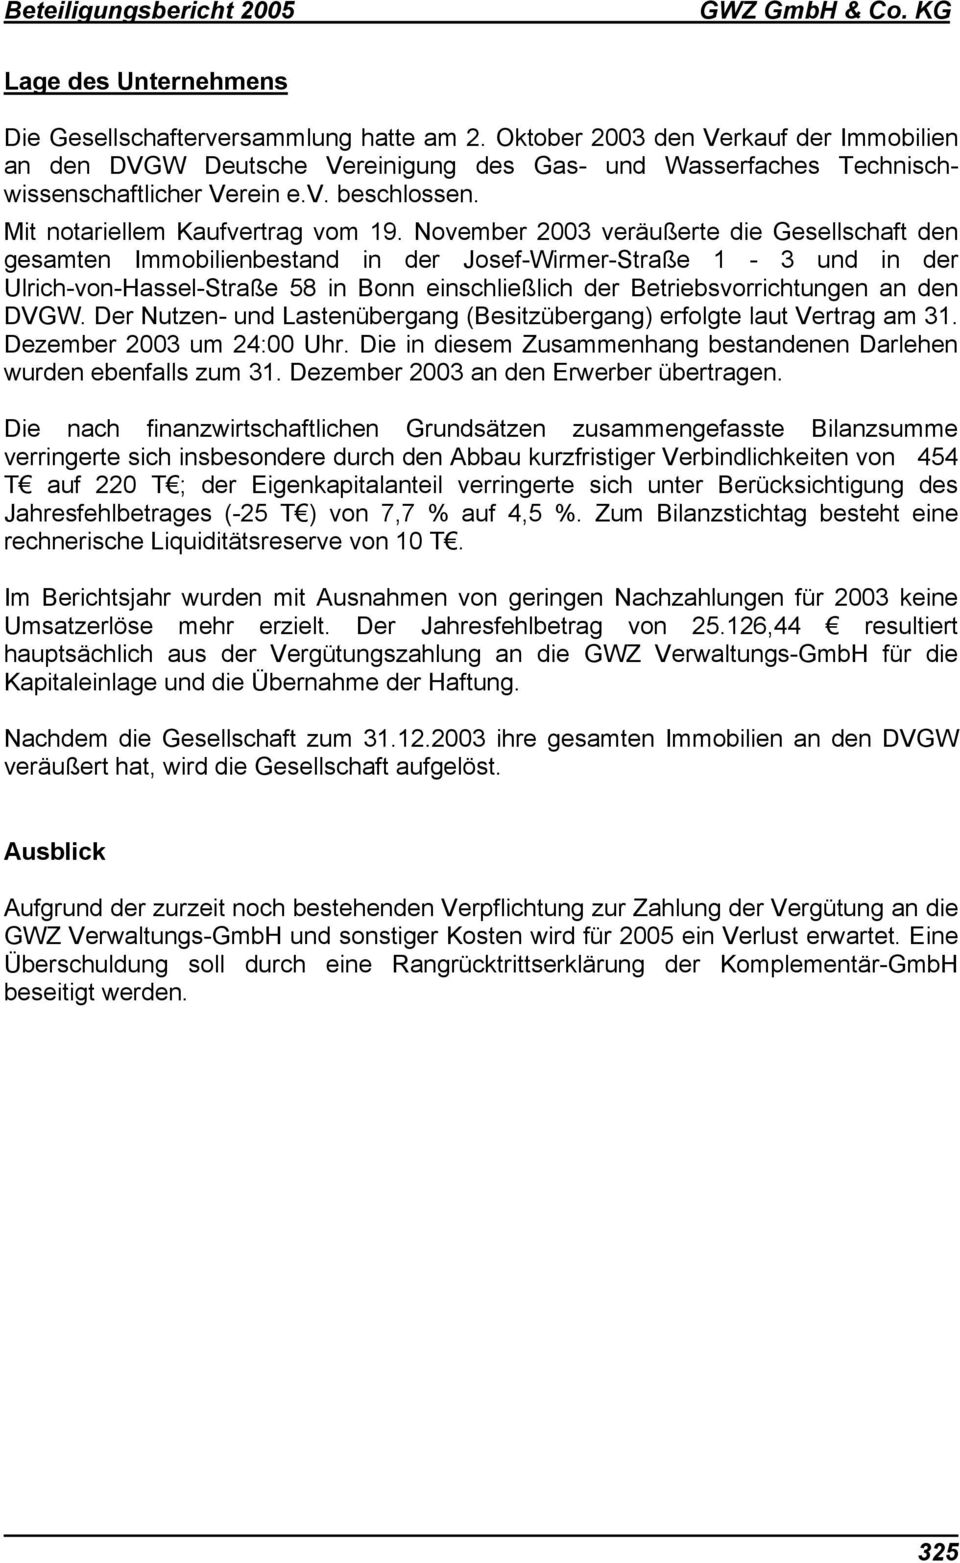 November 2003 veräußerte die Gesellschaft den gesamten Immobilienbestand in der Josef-Wirmer-Straße 1-3 und in der Ulrich-von-Hassel-Straße 58 in Bonn einschließlich der Betriebsvorrichtungen an den